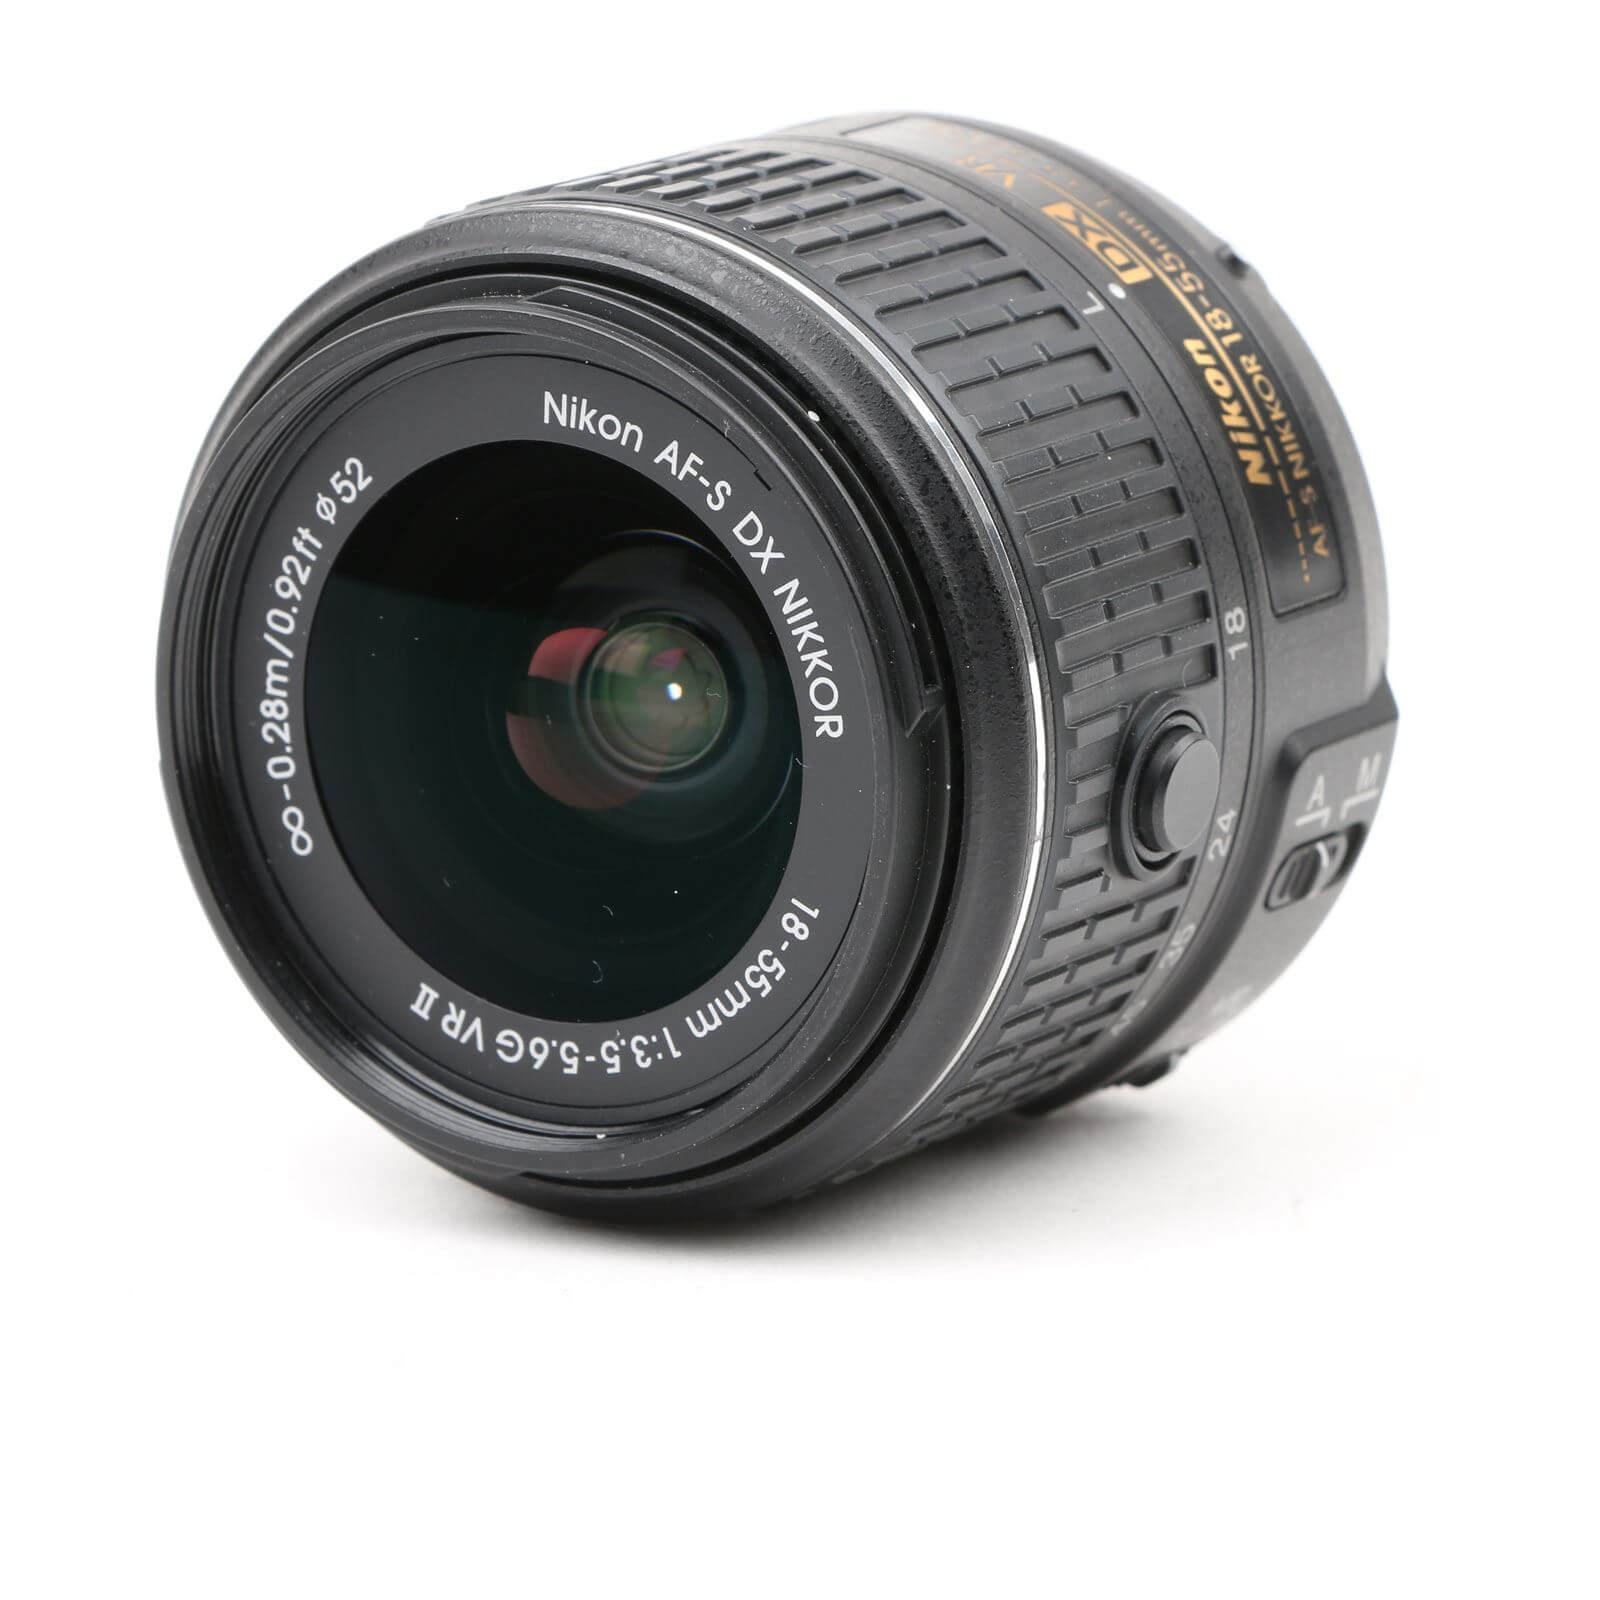 Nikon AF-S DX Nikkor 18-55mm f/3.5-5.6 G VR II Lens - Lenses and Cameras